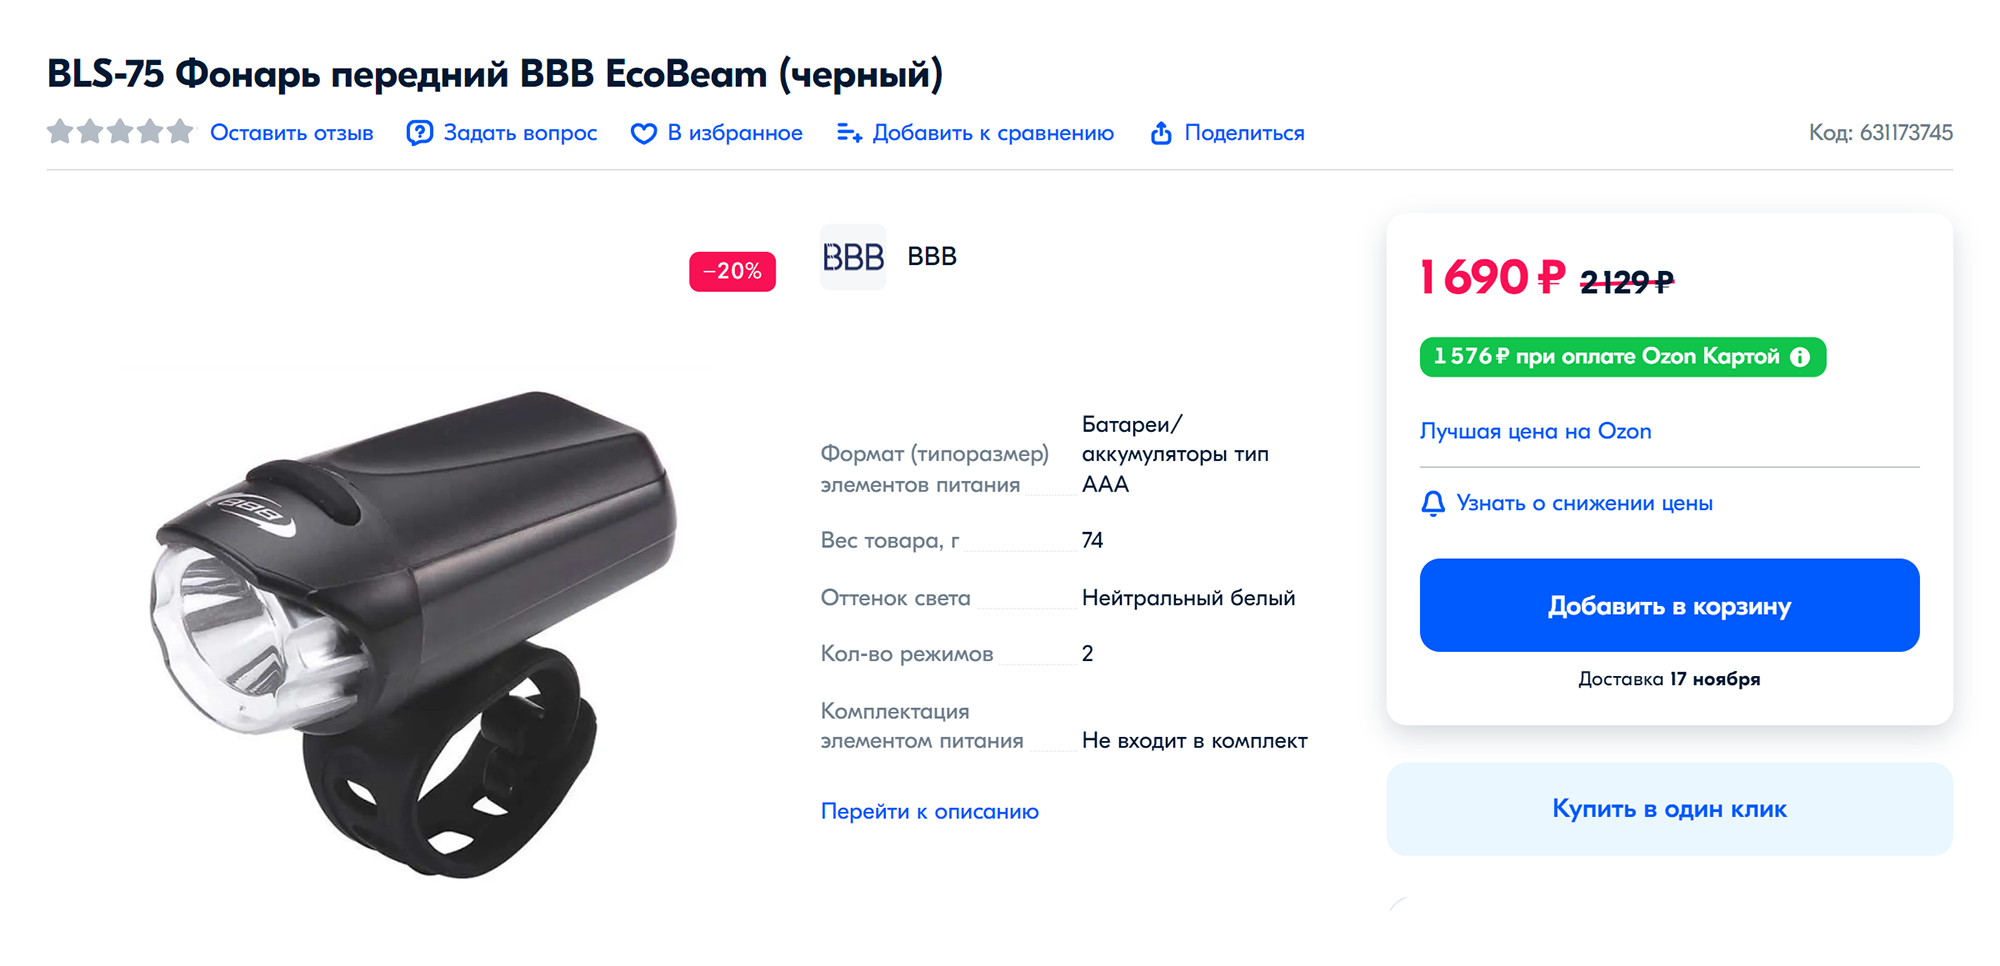 Похожий фонарь фирмы BBB служил мне десять лет. Как и у большинства других, у него несколько режимов, включая мерцание. Источник: ozon.ru